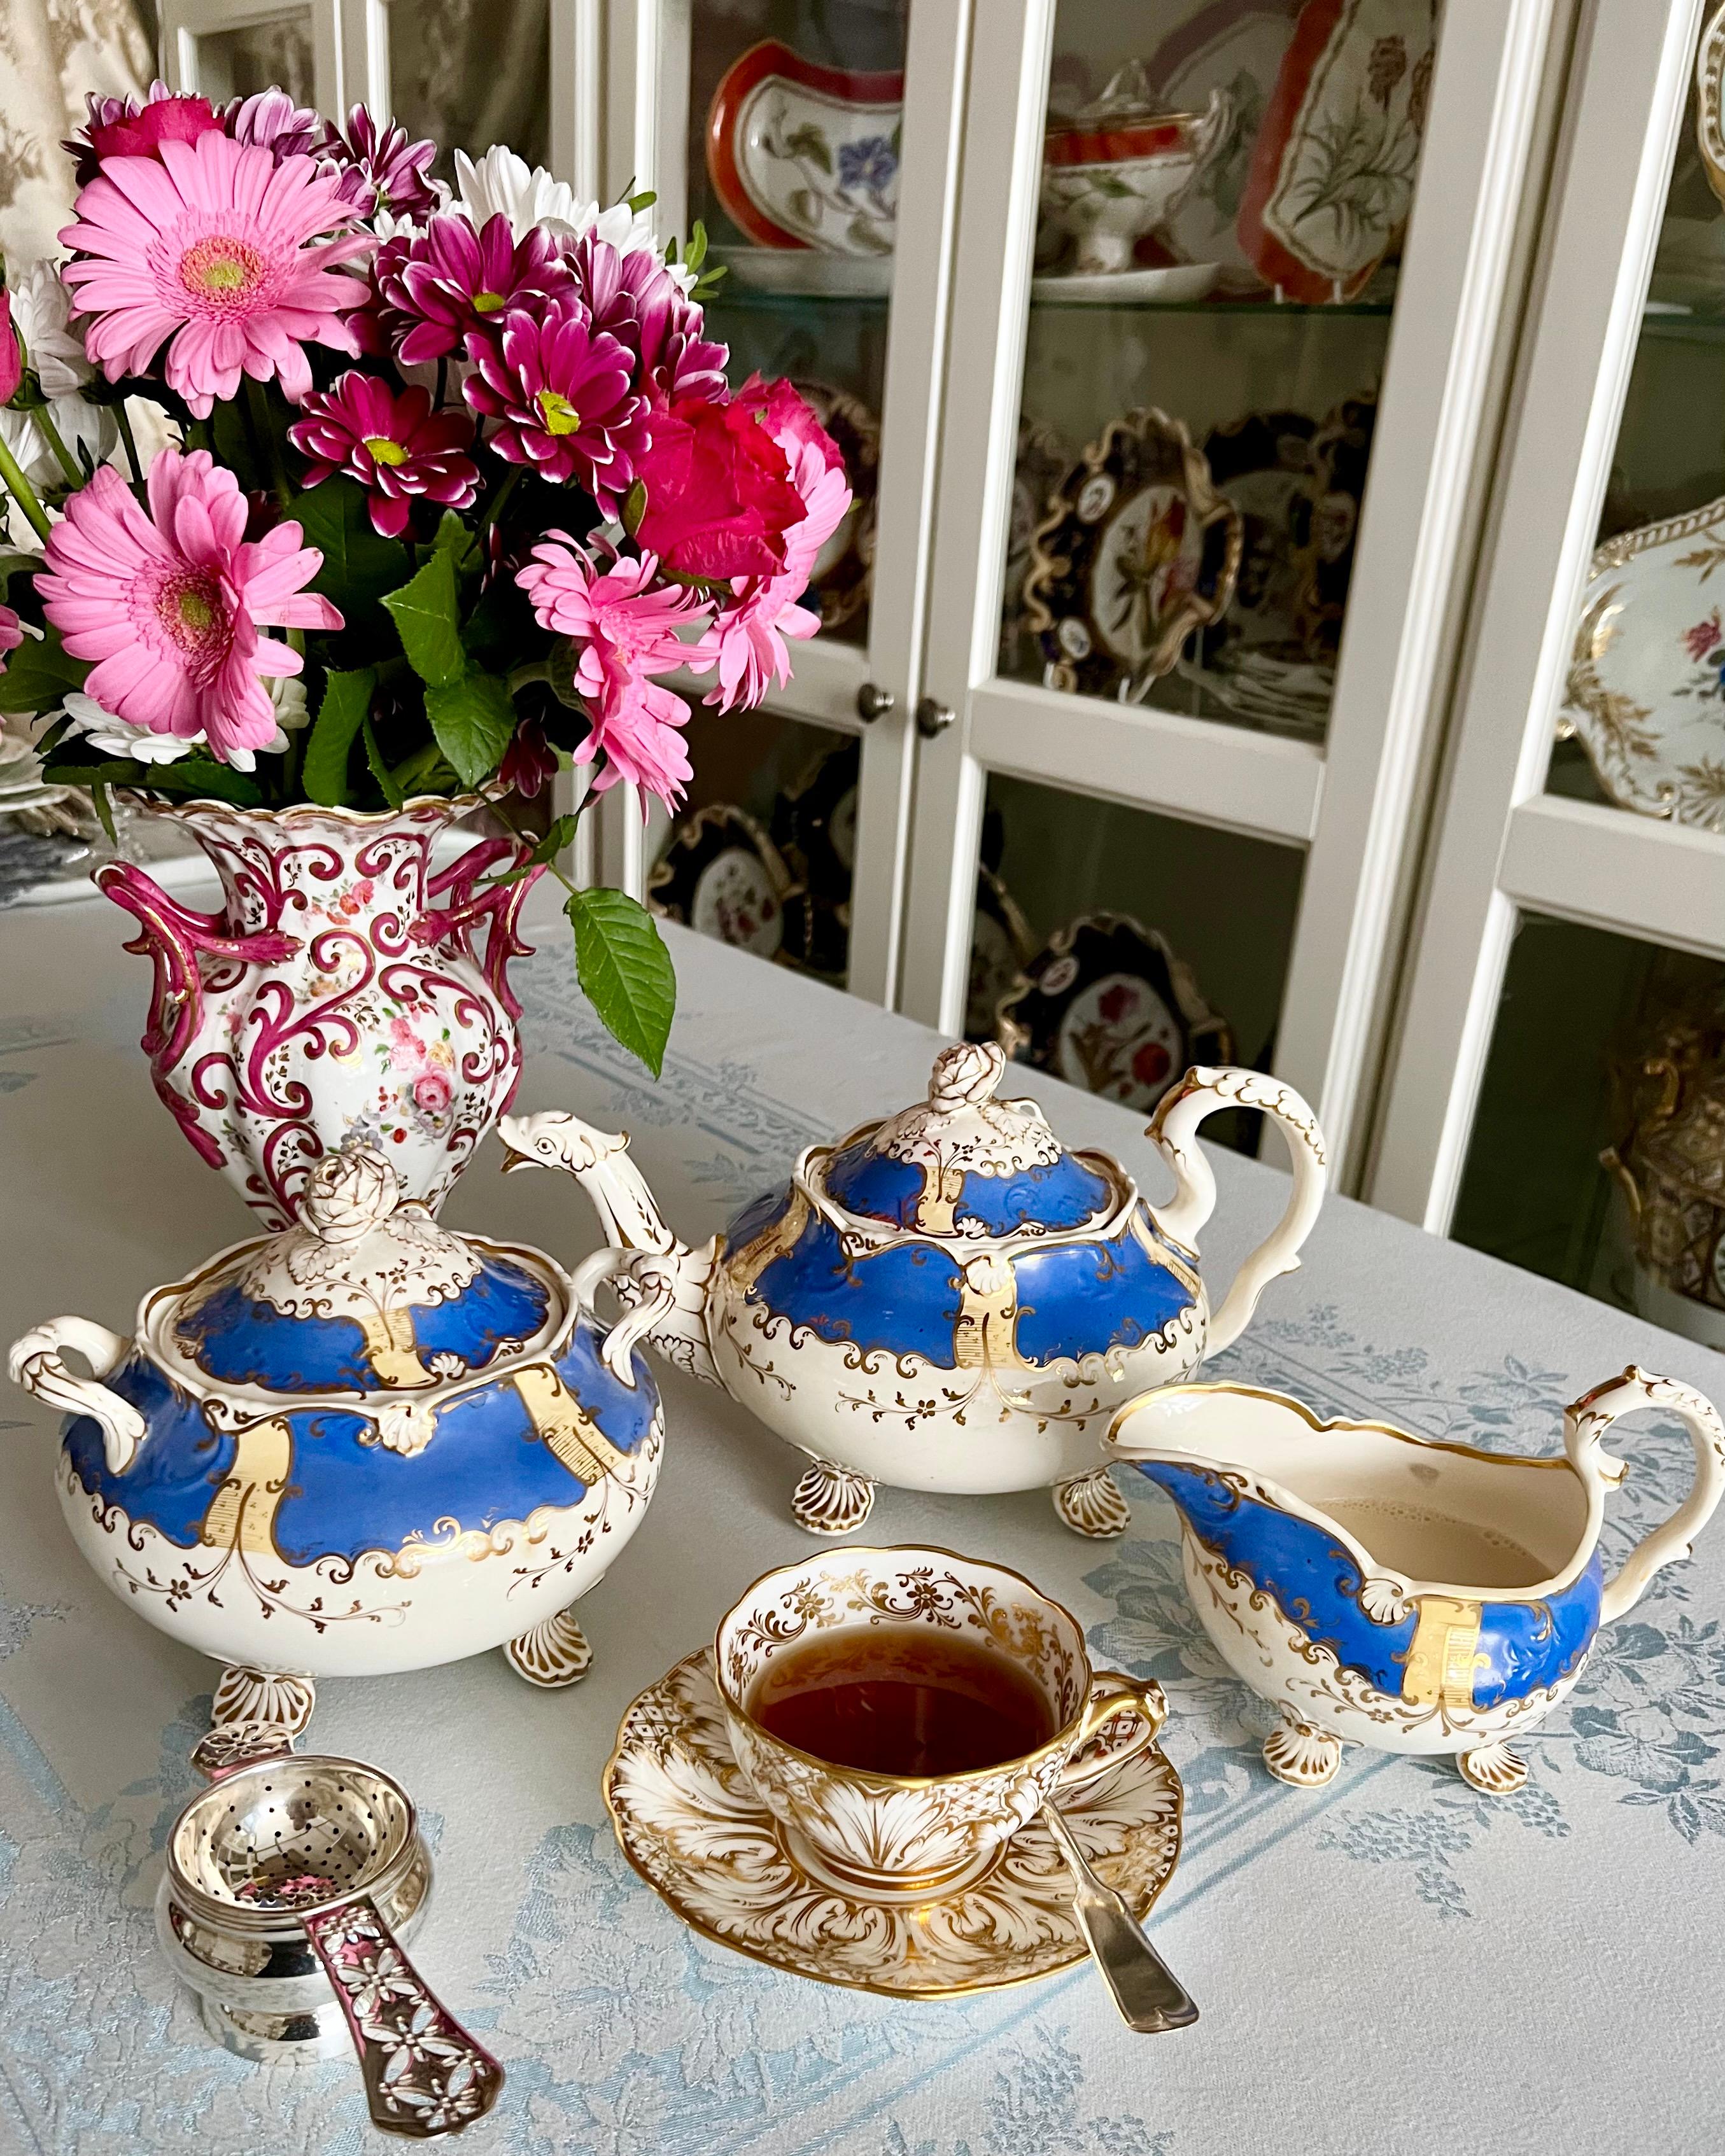 Dies ist ein schönes Teekannen-Set von H&R Daniel aus dem Jahr 1831. Das Set besteht aus einer Teekanne mit Deckel, einem Sucrier mit Deckel und einem Milchkännchen.

Die Porzellanfabrik H & R Daniel wurde von Henry Daniel gegründet, dem Sohn